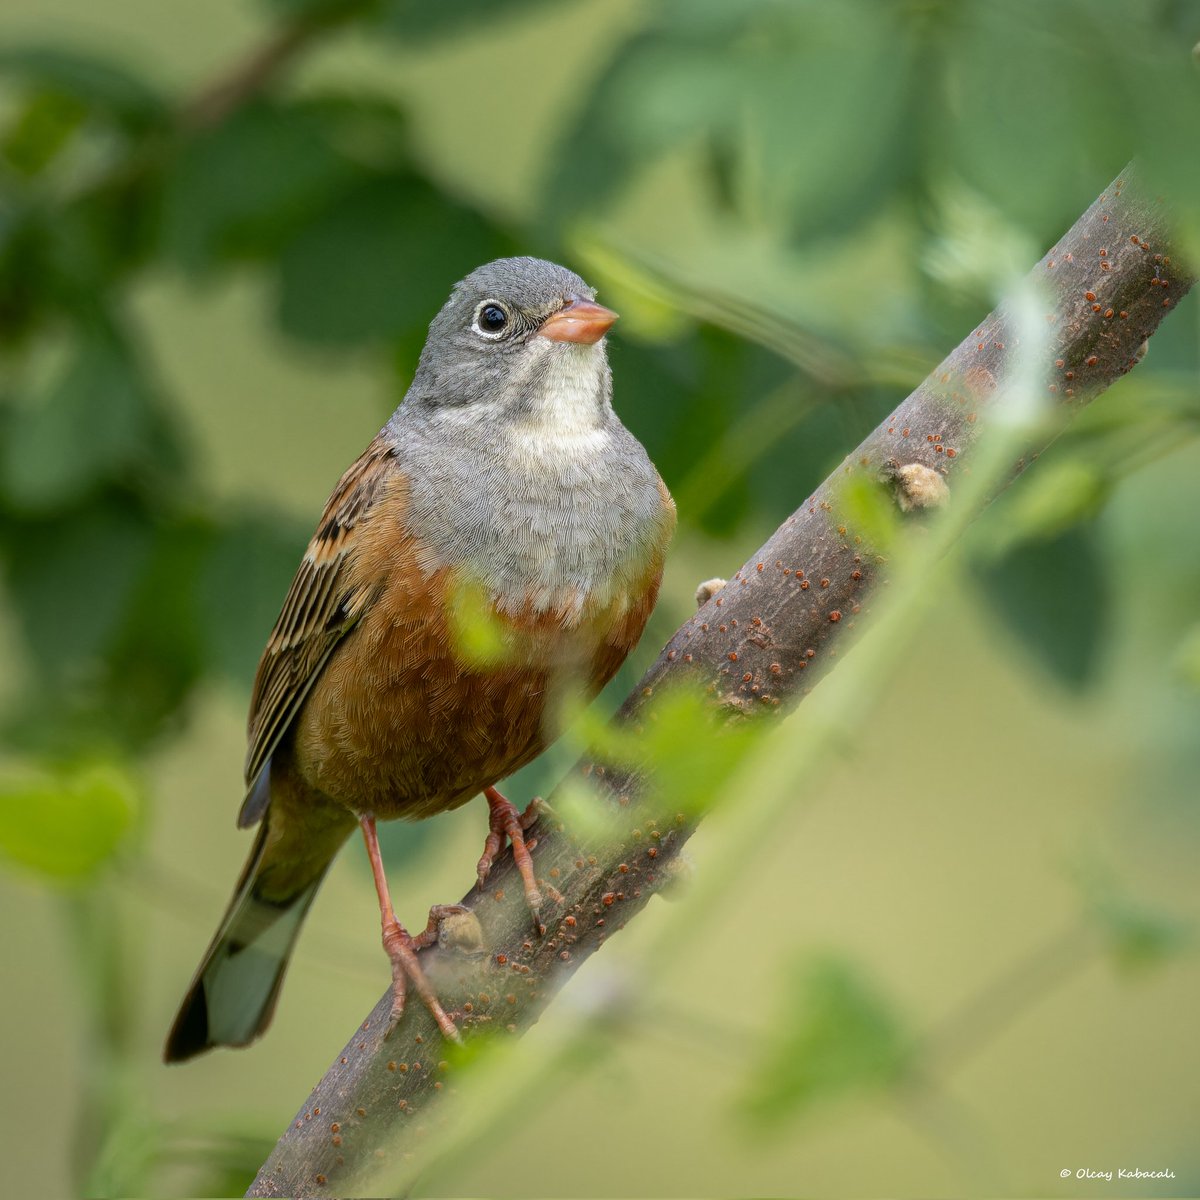 Kiraz kuşu
Ortolan bunting
#hangitür #birdphotography #fujifilm